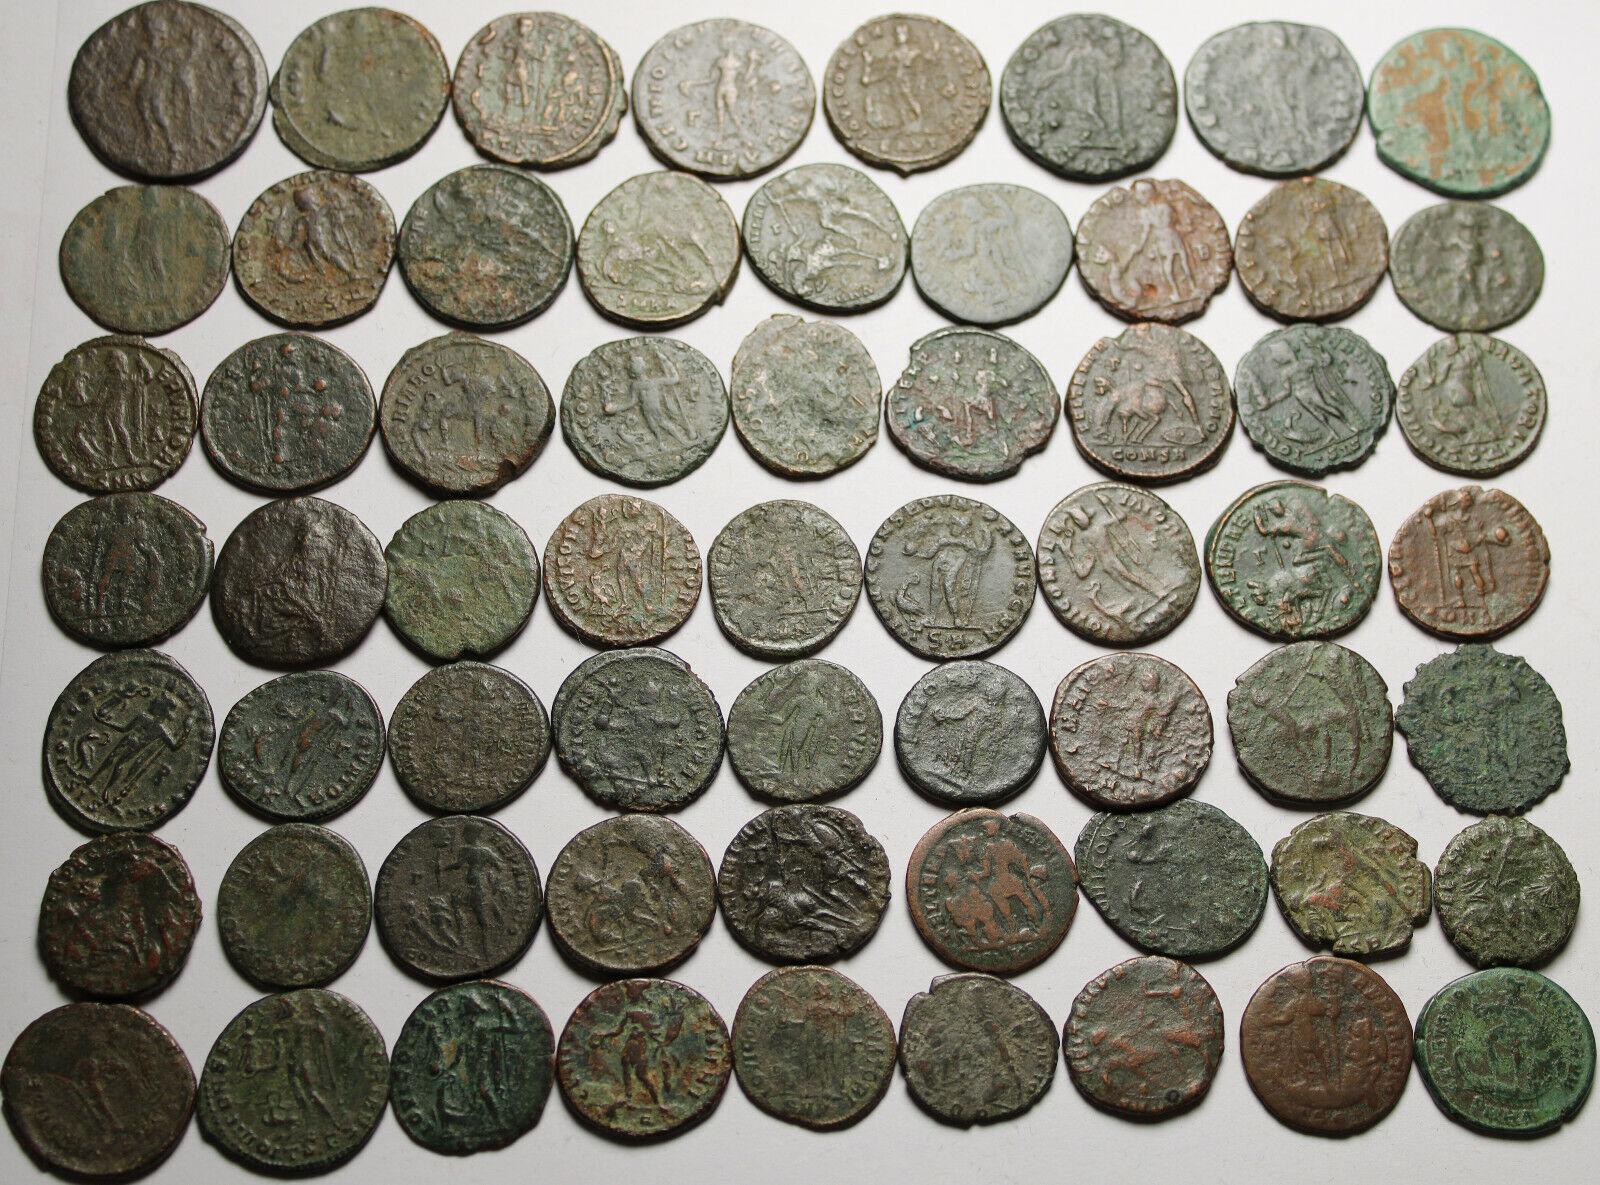 Lot of 3 large coins Rare original Ancient Roman Constantius Licinius Maximianus Без бренда - фотография #3